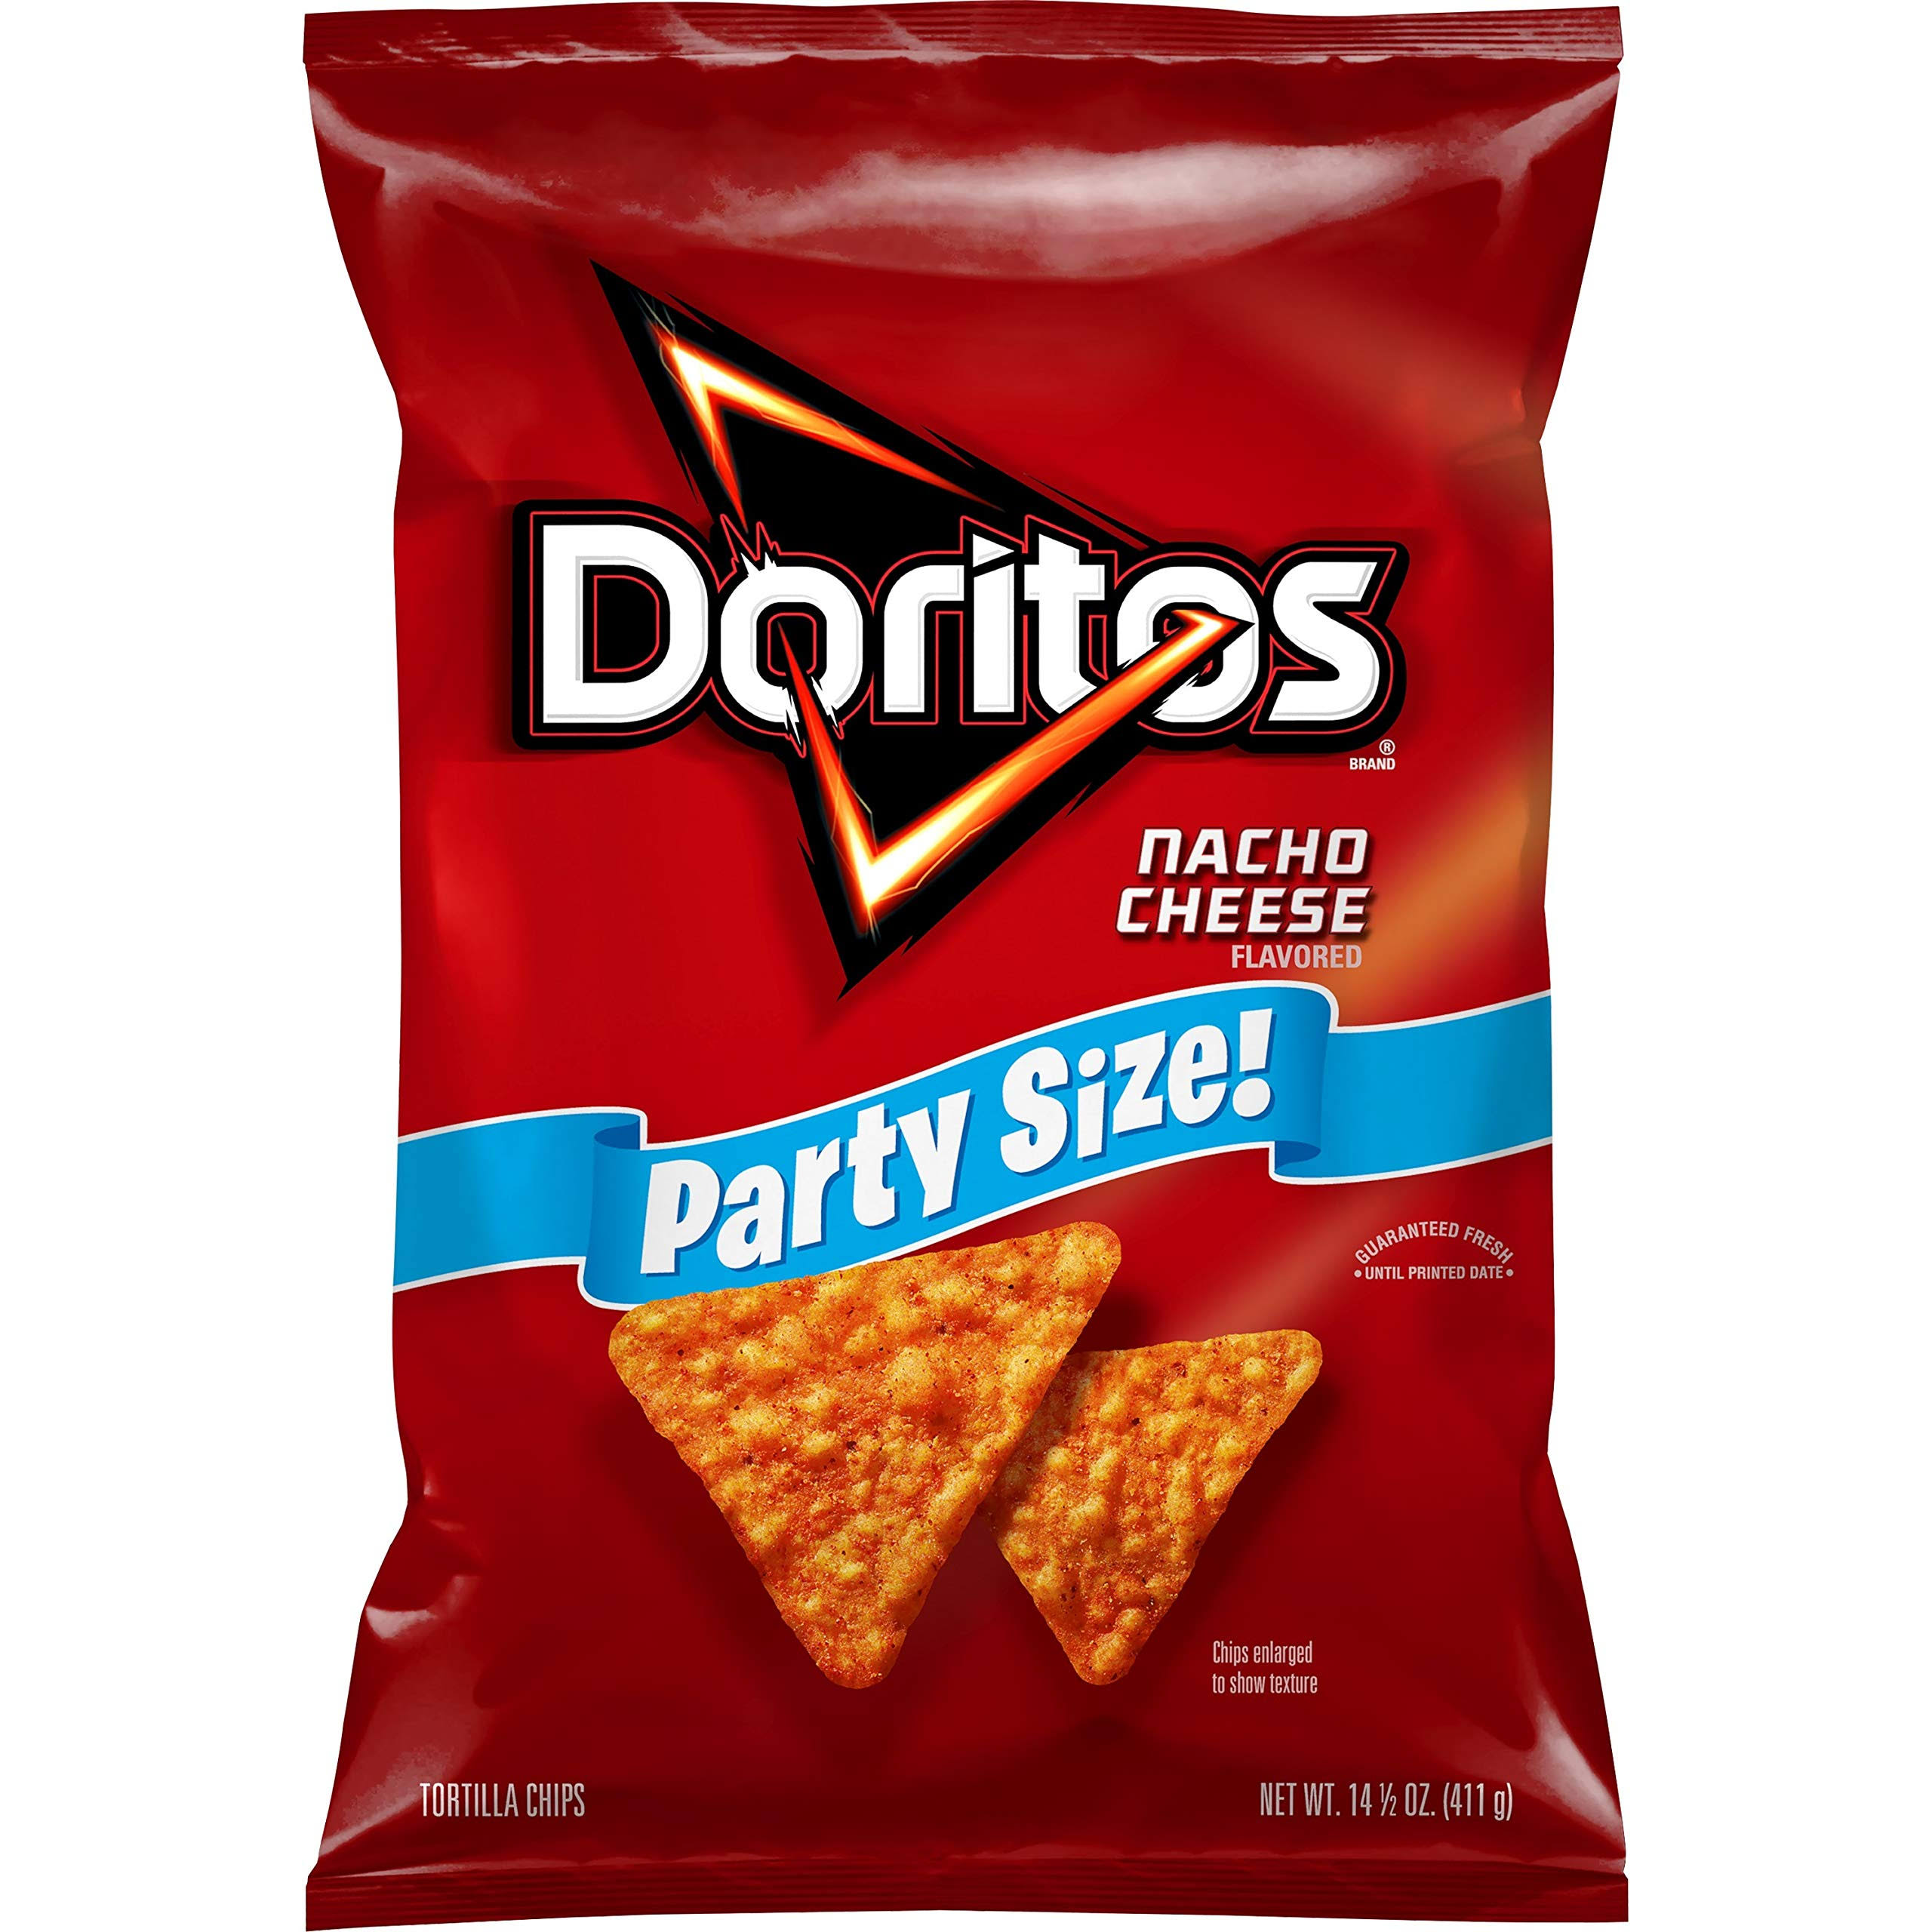 Doritos Tortilla Chips, Nacho Cheese, 14.5 oz Party Size Bag